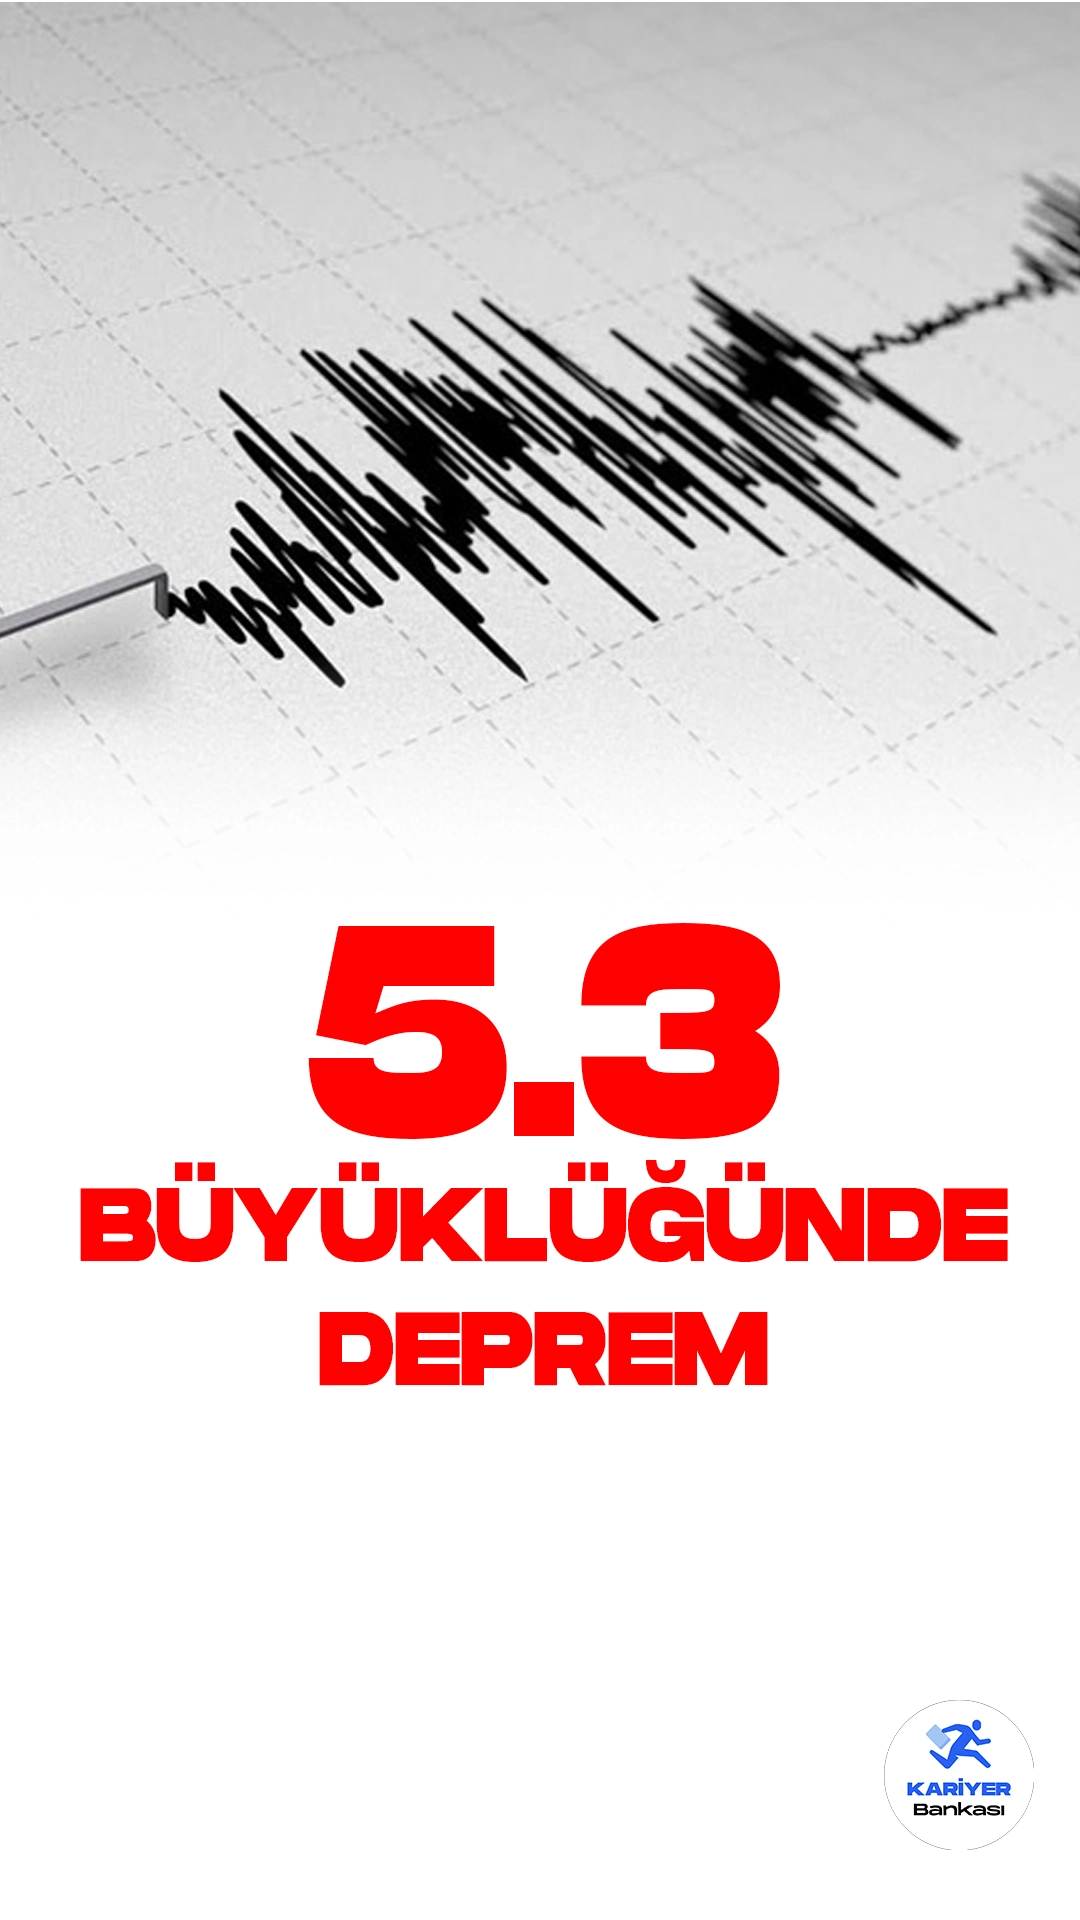 Malatya'da 5.3 Büyüklüğünde Deprem Oldu. İçişleri Bakanlığı Afet ve Acil Durum Yönetimi Başkanlığı resmi sayfasından yayımlanan son dakika bilgisine göre, Malatya'nın Yeşilyurt ilçesinde 5.3 büyüklüğünde deprem meydana geldi.